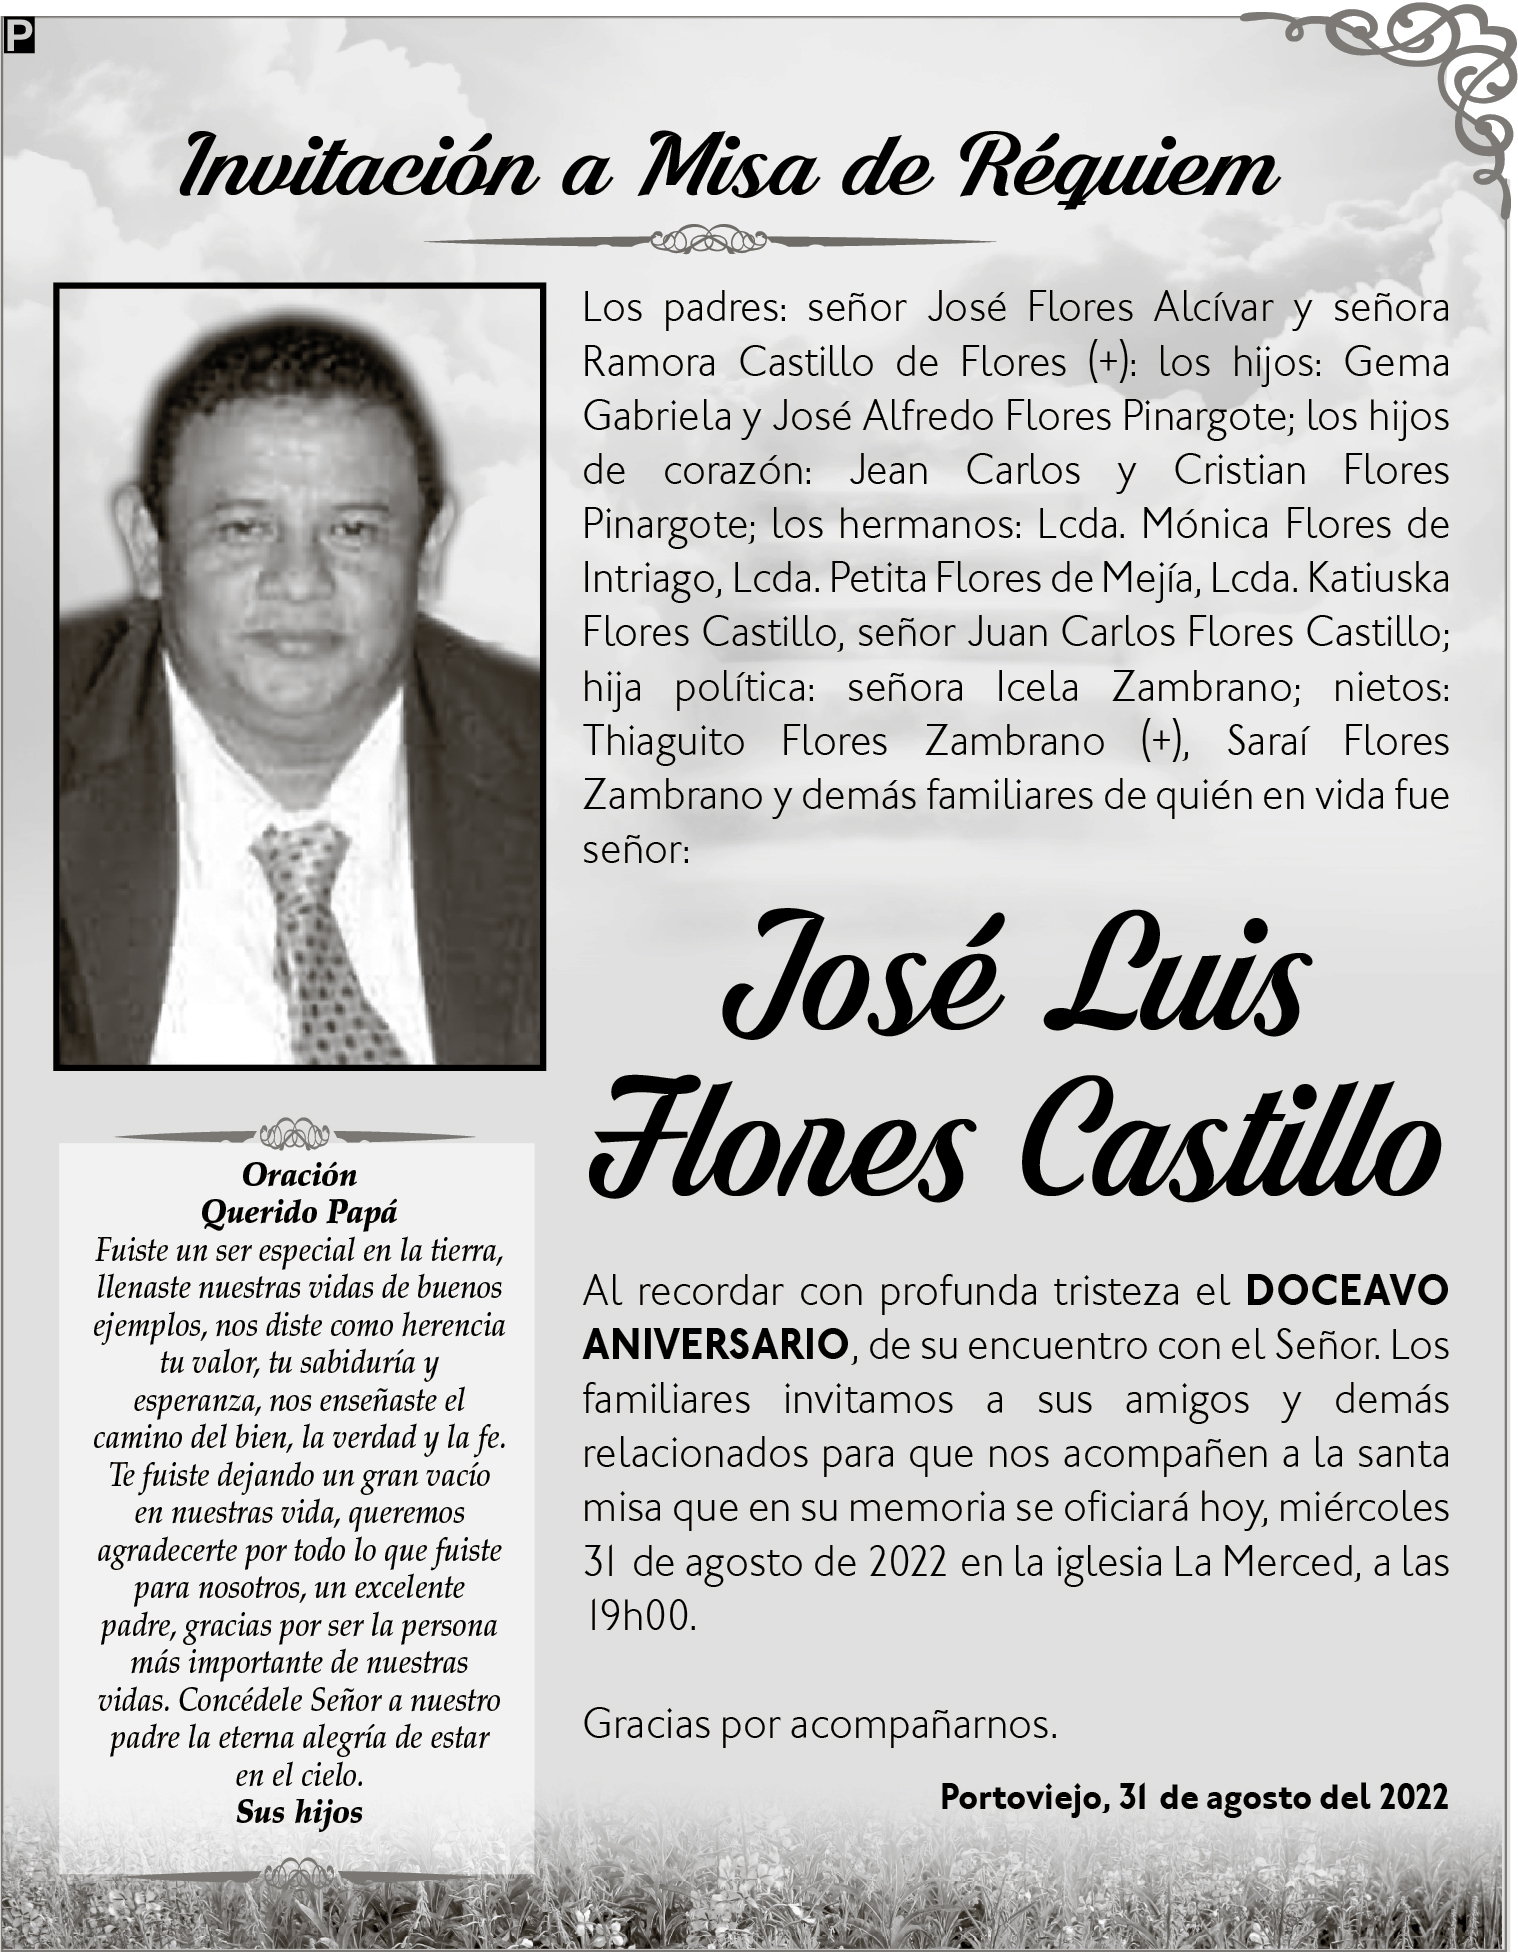 SR. JOSE LUIS FLORES CASTILLO - El Diario Ecuador